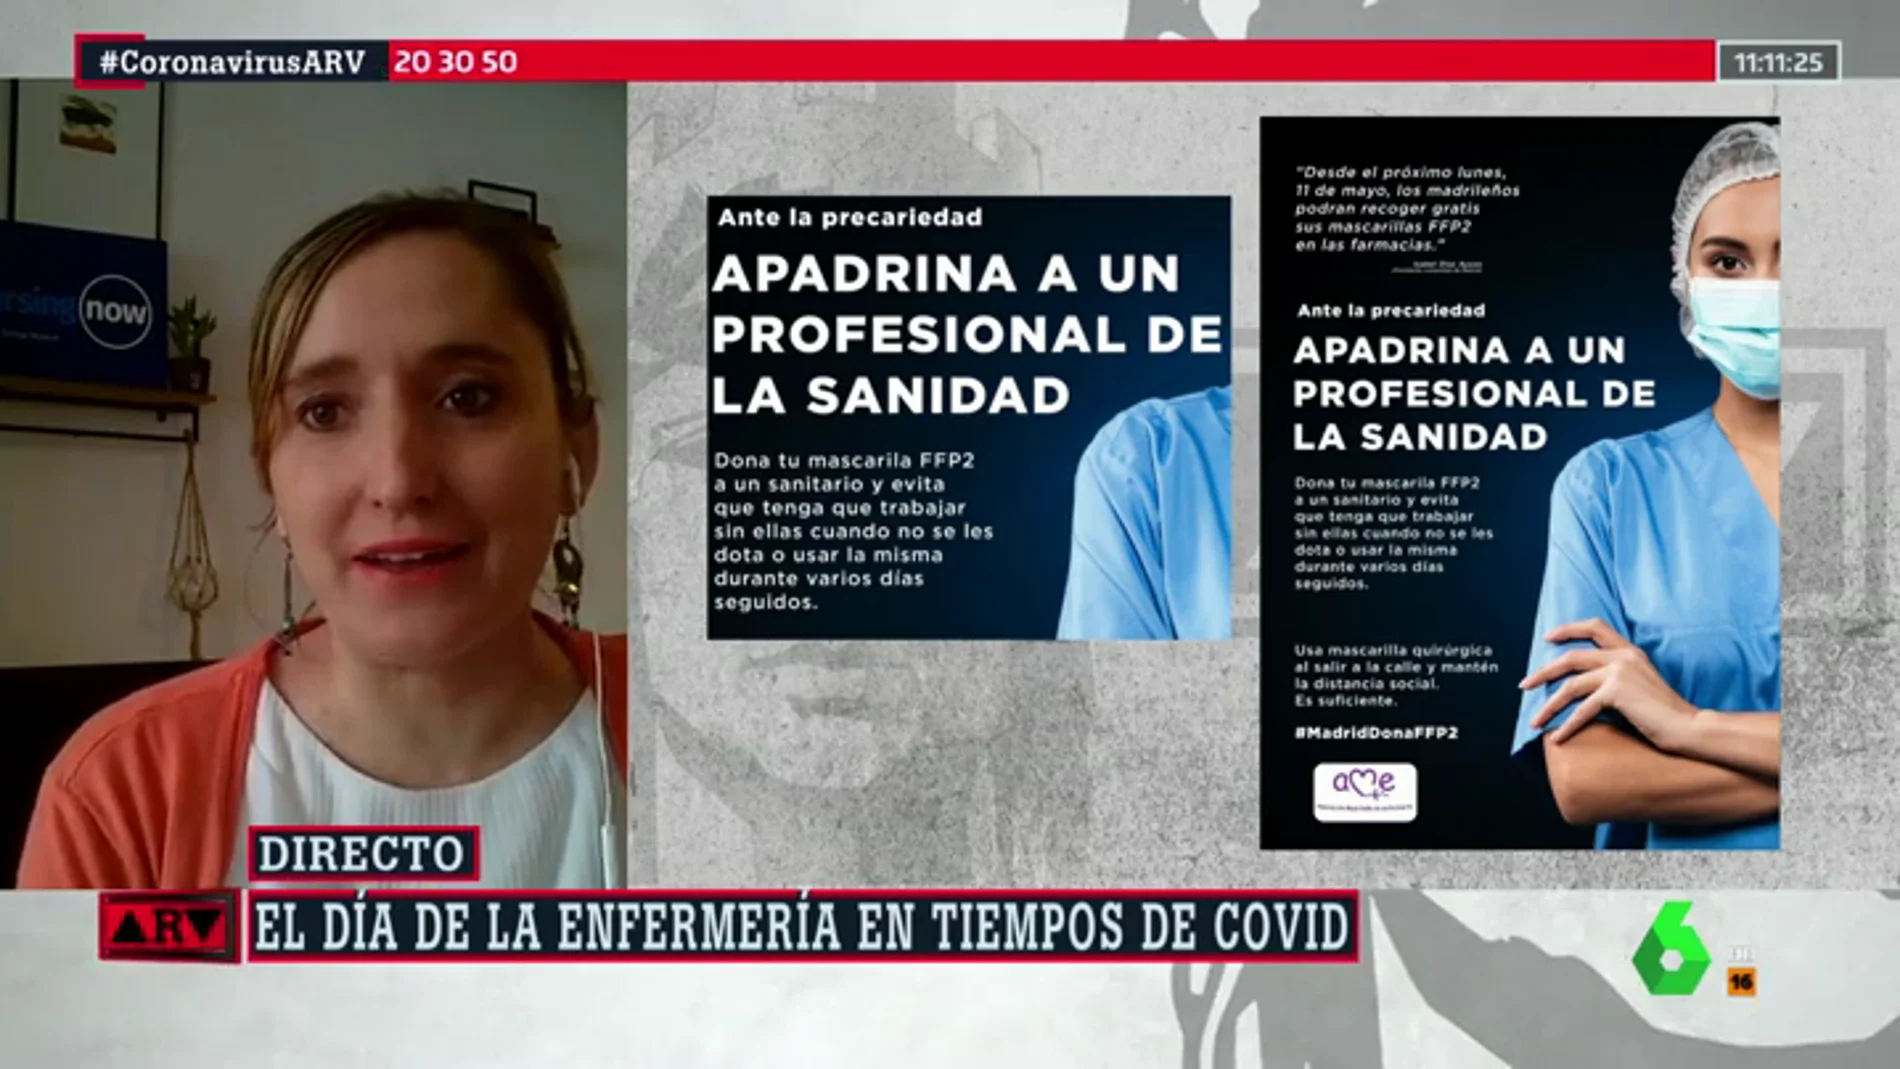 El reproche de la enfermería madrileña a Ayuso: "Hay falta de material y sigue sin entenderlo"